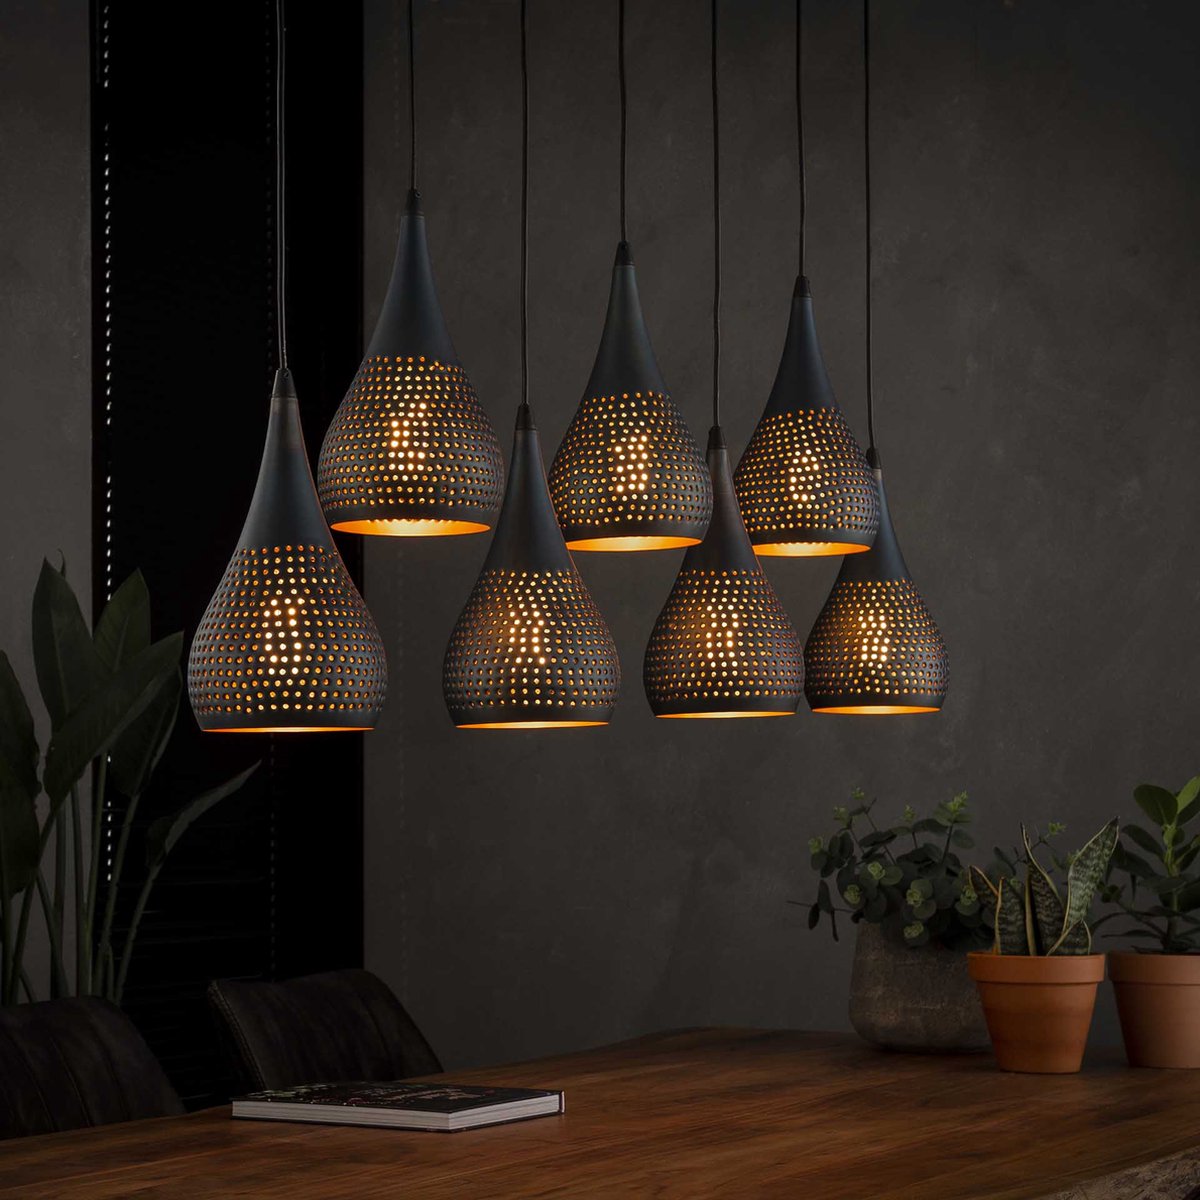 Hanglamp druppel Punch | 125 x 150 cm | 7 x ⌀15 lichts | bruin / zwart | eettafel lamp | eetkamer / woonkamer | landelijk / moden design